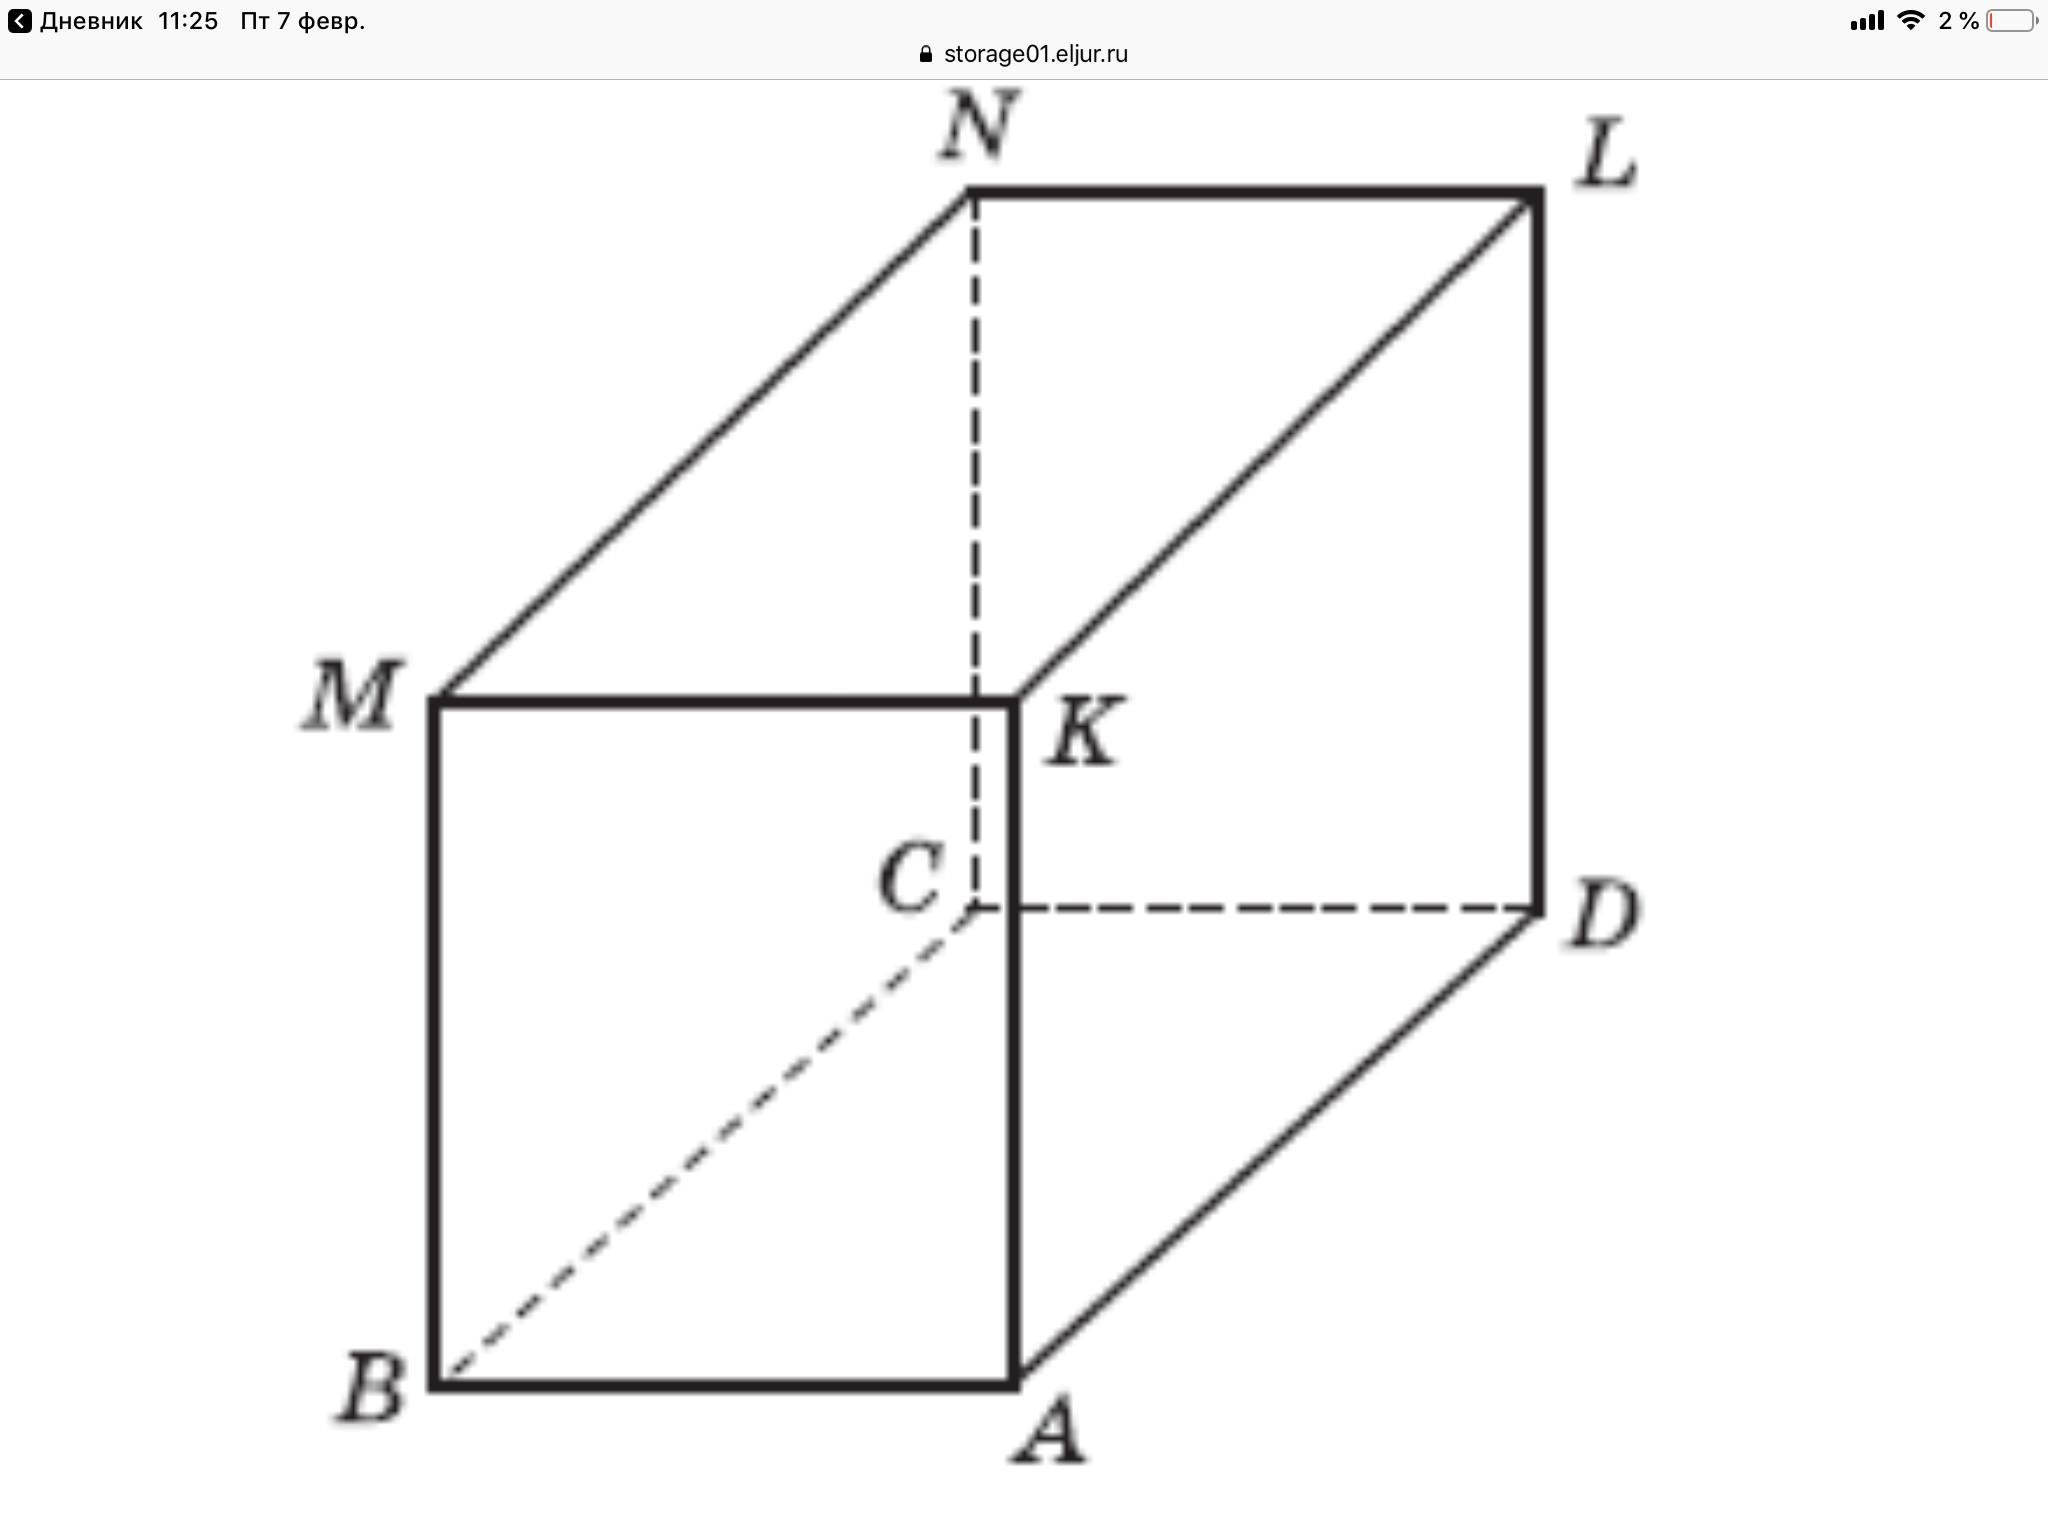 На рисунке изображены два прямоугольных параллелепипеда. Параллелепипед. Прямоугольник параллелепипед. Овальный и треугольный параллелепипед. Предметы в форме параллелепипеда.